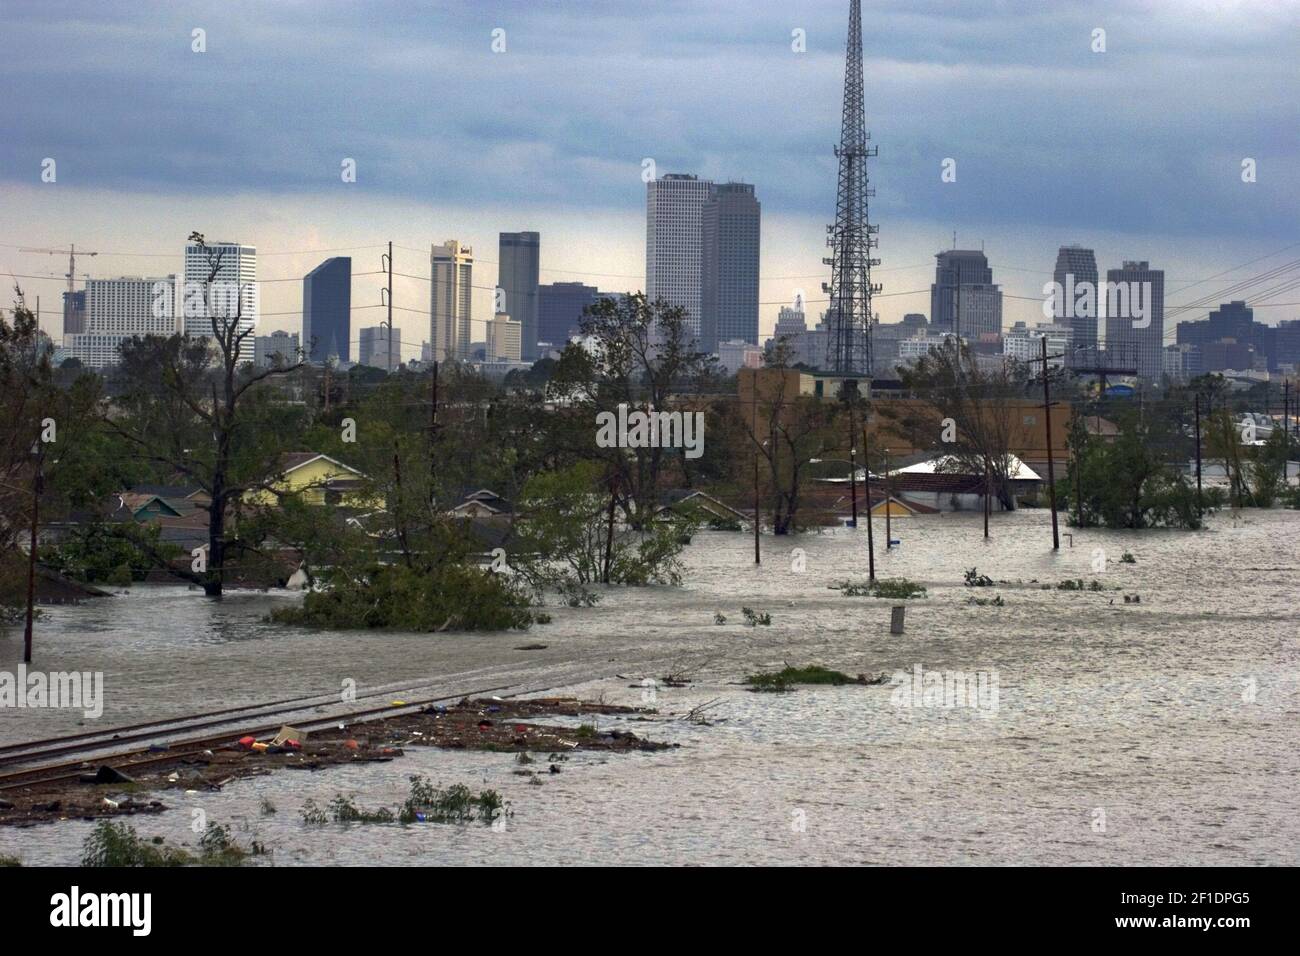 29 août 2005. La Nouvelle-Orléans, Louisiane. L'ouragan Katrina frappe la Nouvelle-Orléans. Les voies ferrées disparaissent dans les eaux de crue montantes de la 9e paroisse. (Photo de Charlie Varley). *** Veuillez utiliser le crédit du champ de crédit *** Banque D'Images